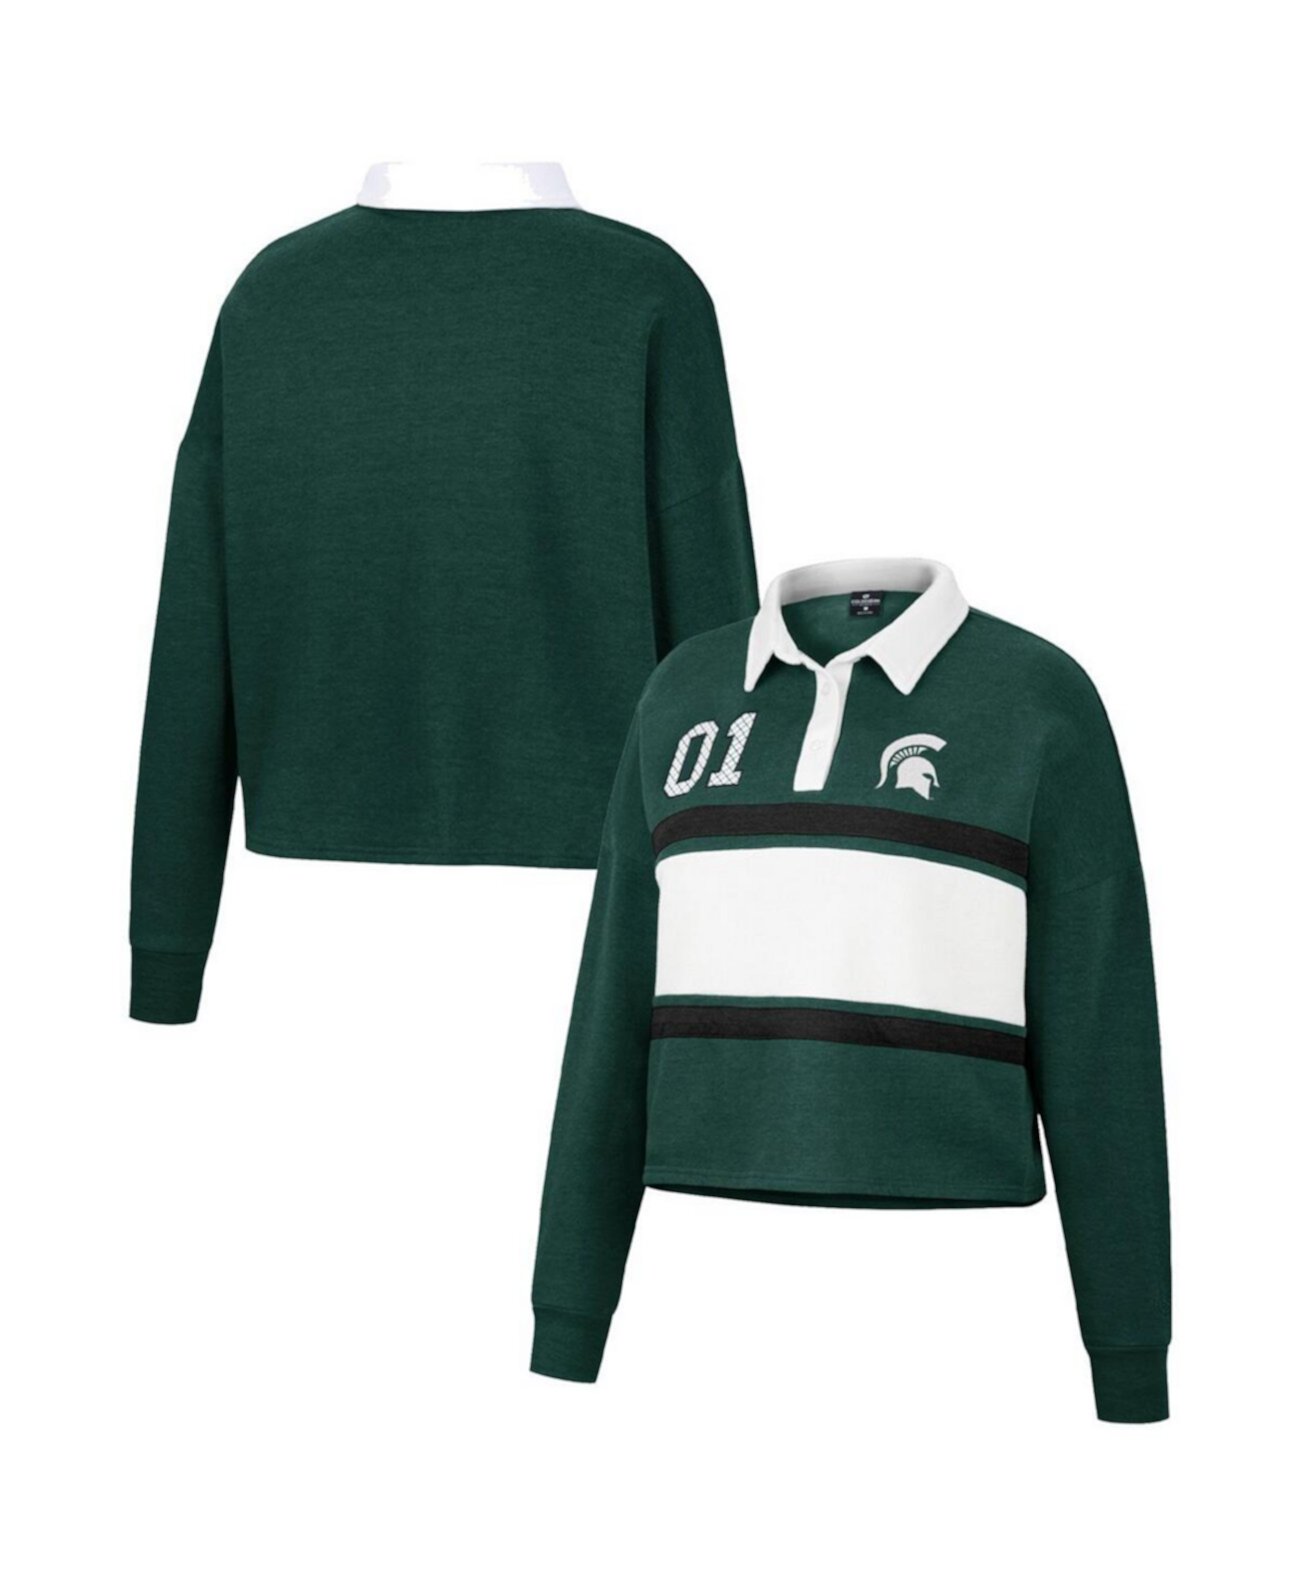 Женская зеленая рубашка с длинным рукавом в стиле регби Michigan State Spartans I Love My Job Rugby Colosseum